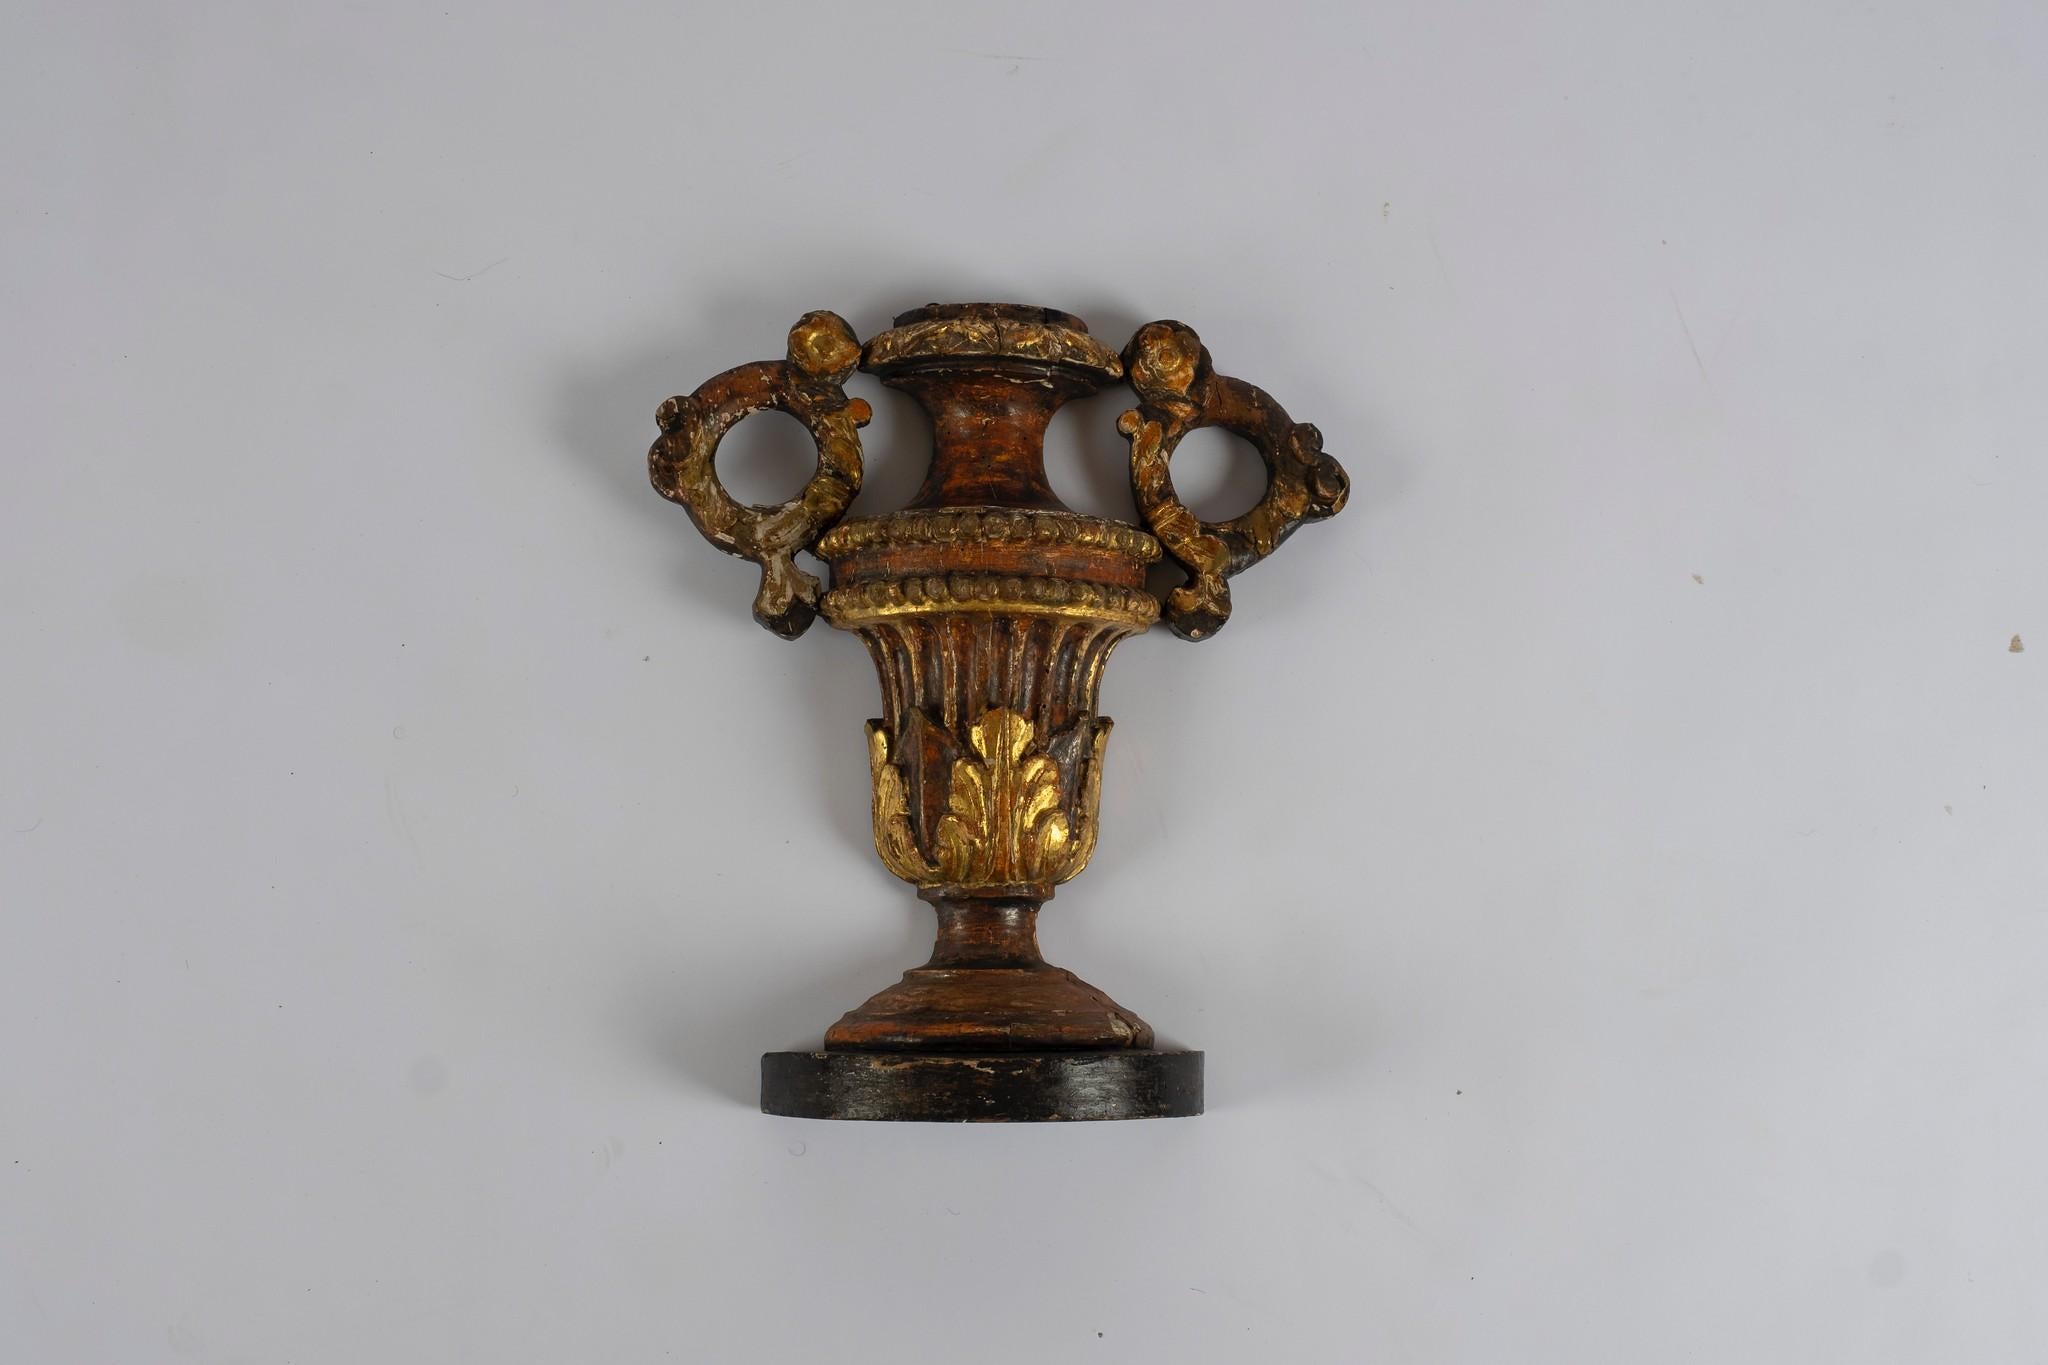 Belle paire d'ornements d'urne en bois doré du 18e siècle, détaillés en trois dimensions. Pièces d'époque originales, Italie, vers 1750.